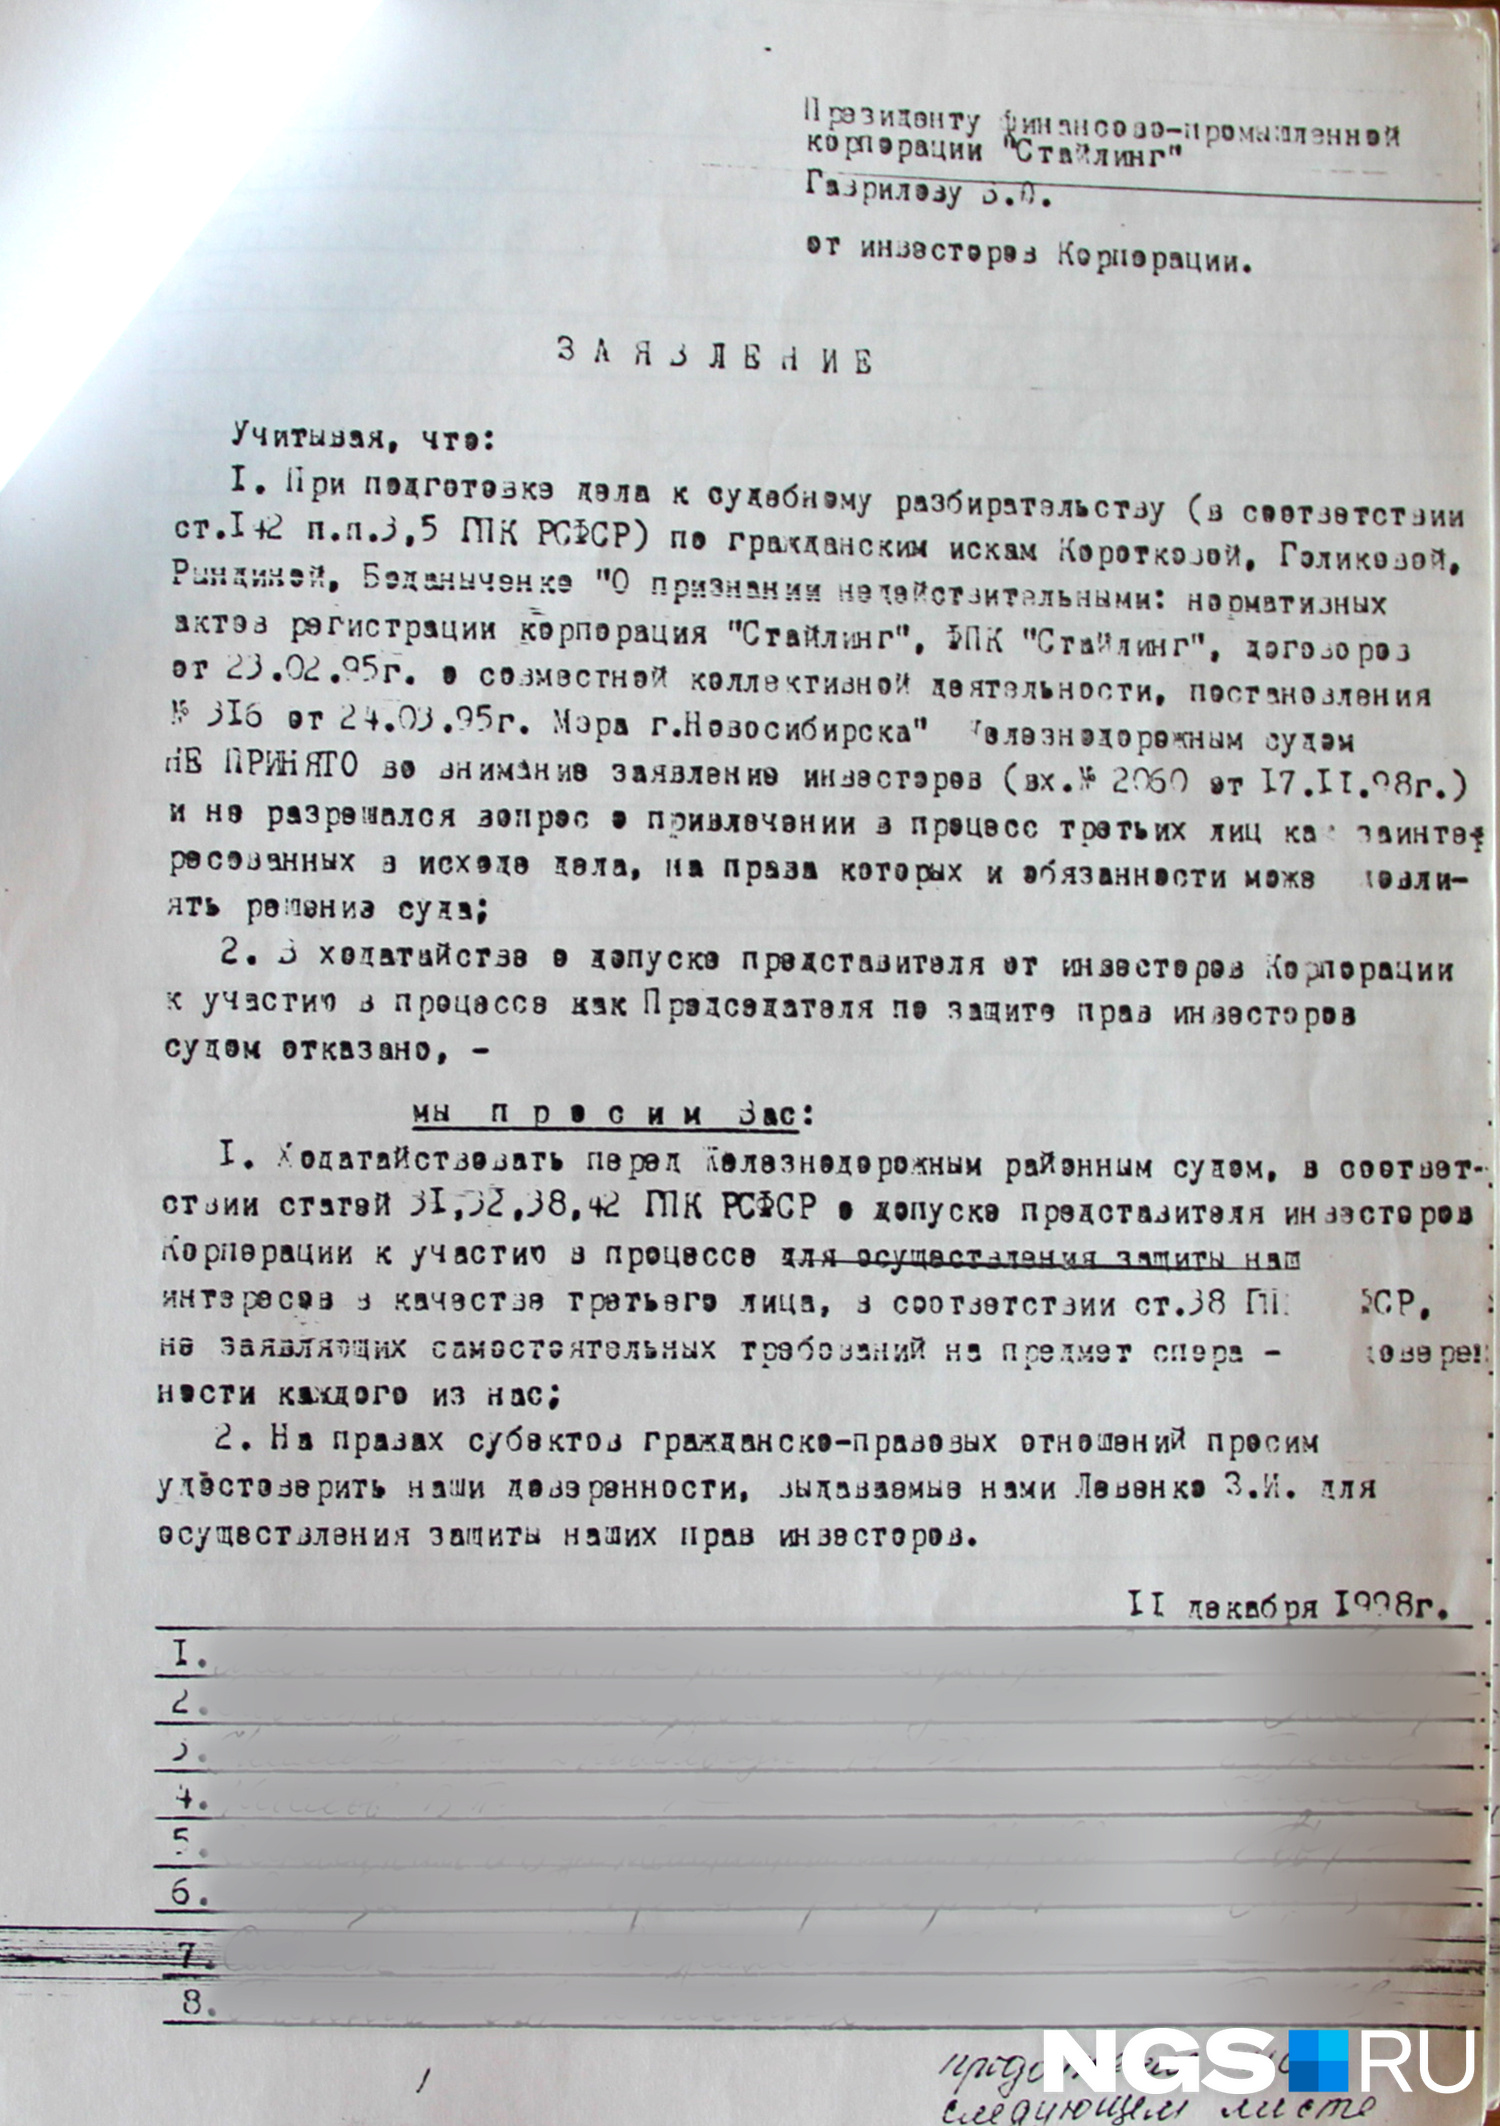 Коллективное заявление от инвесторов президенту ФПК «Стайлинг», датированное 11 декабря 1998 года